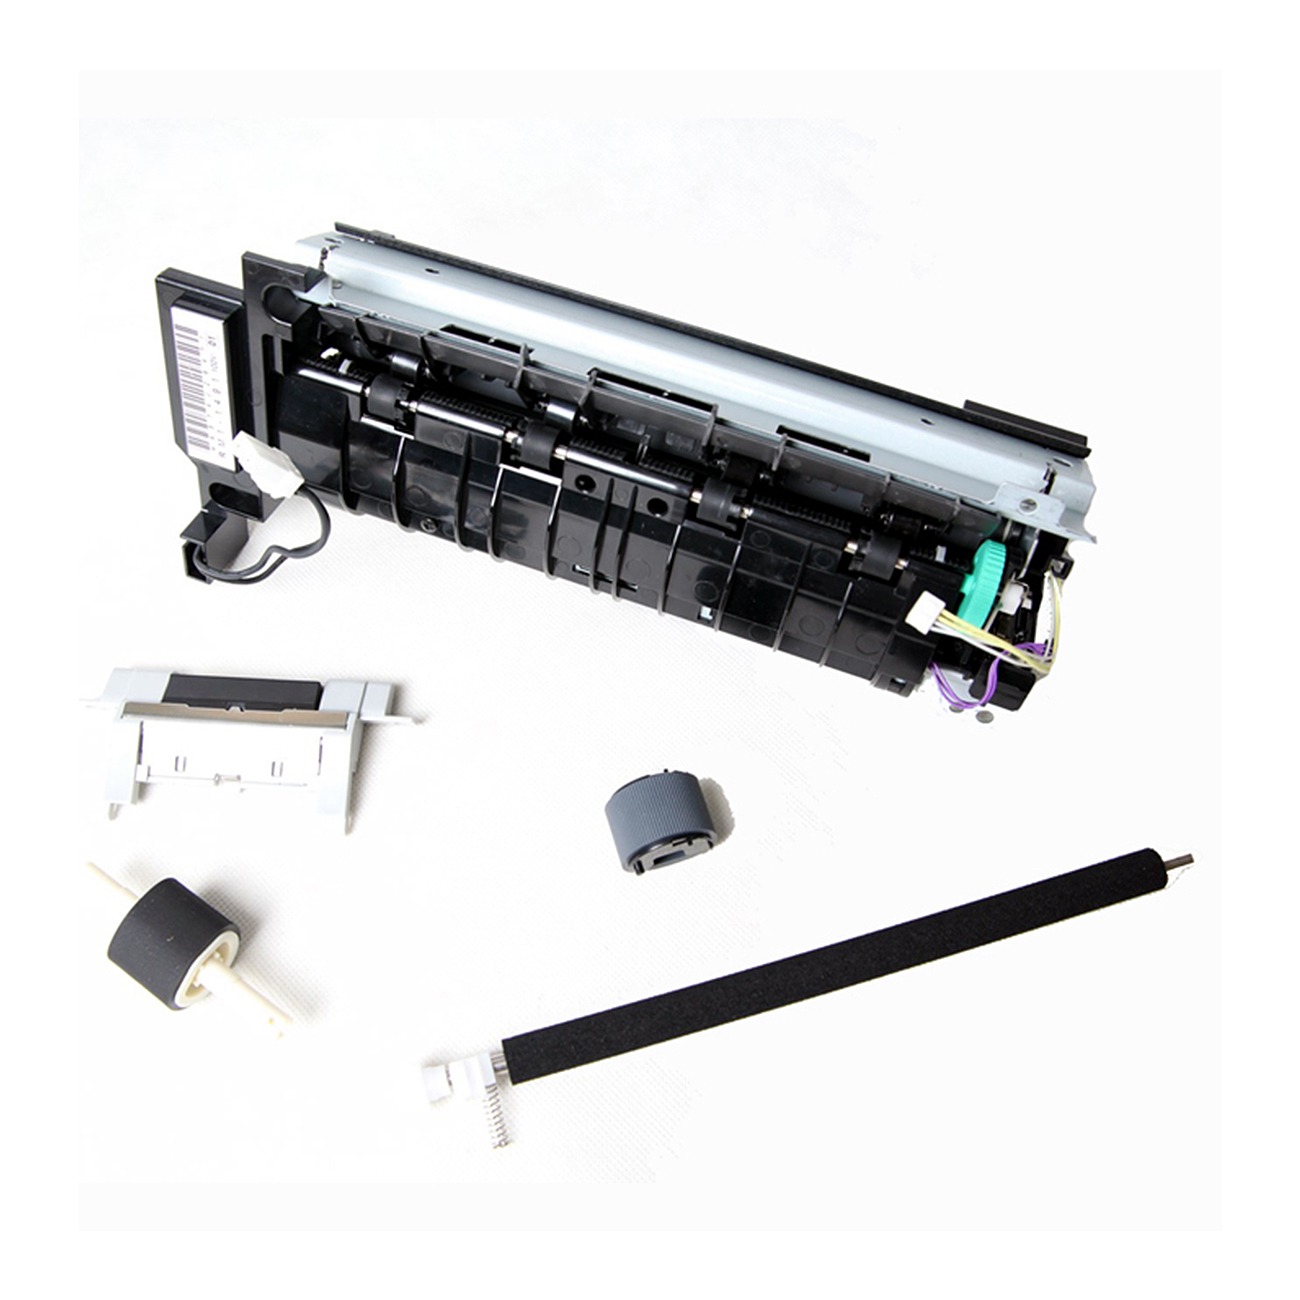 Original HP  Maintenance Kit H3980-60002 for printers:  HP Laserjet 2400/ 2410/ 2420/ 2430